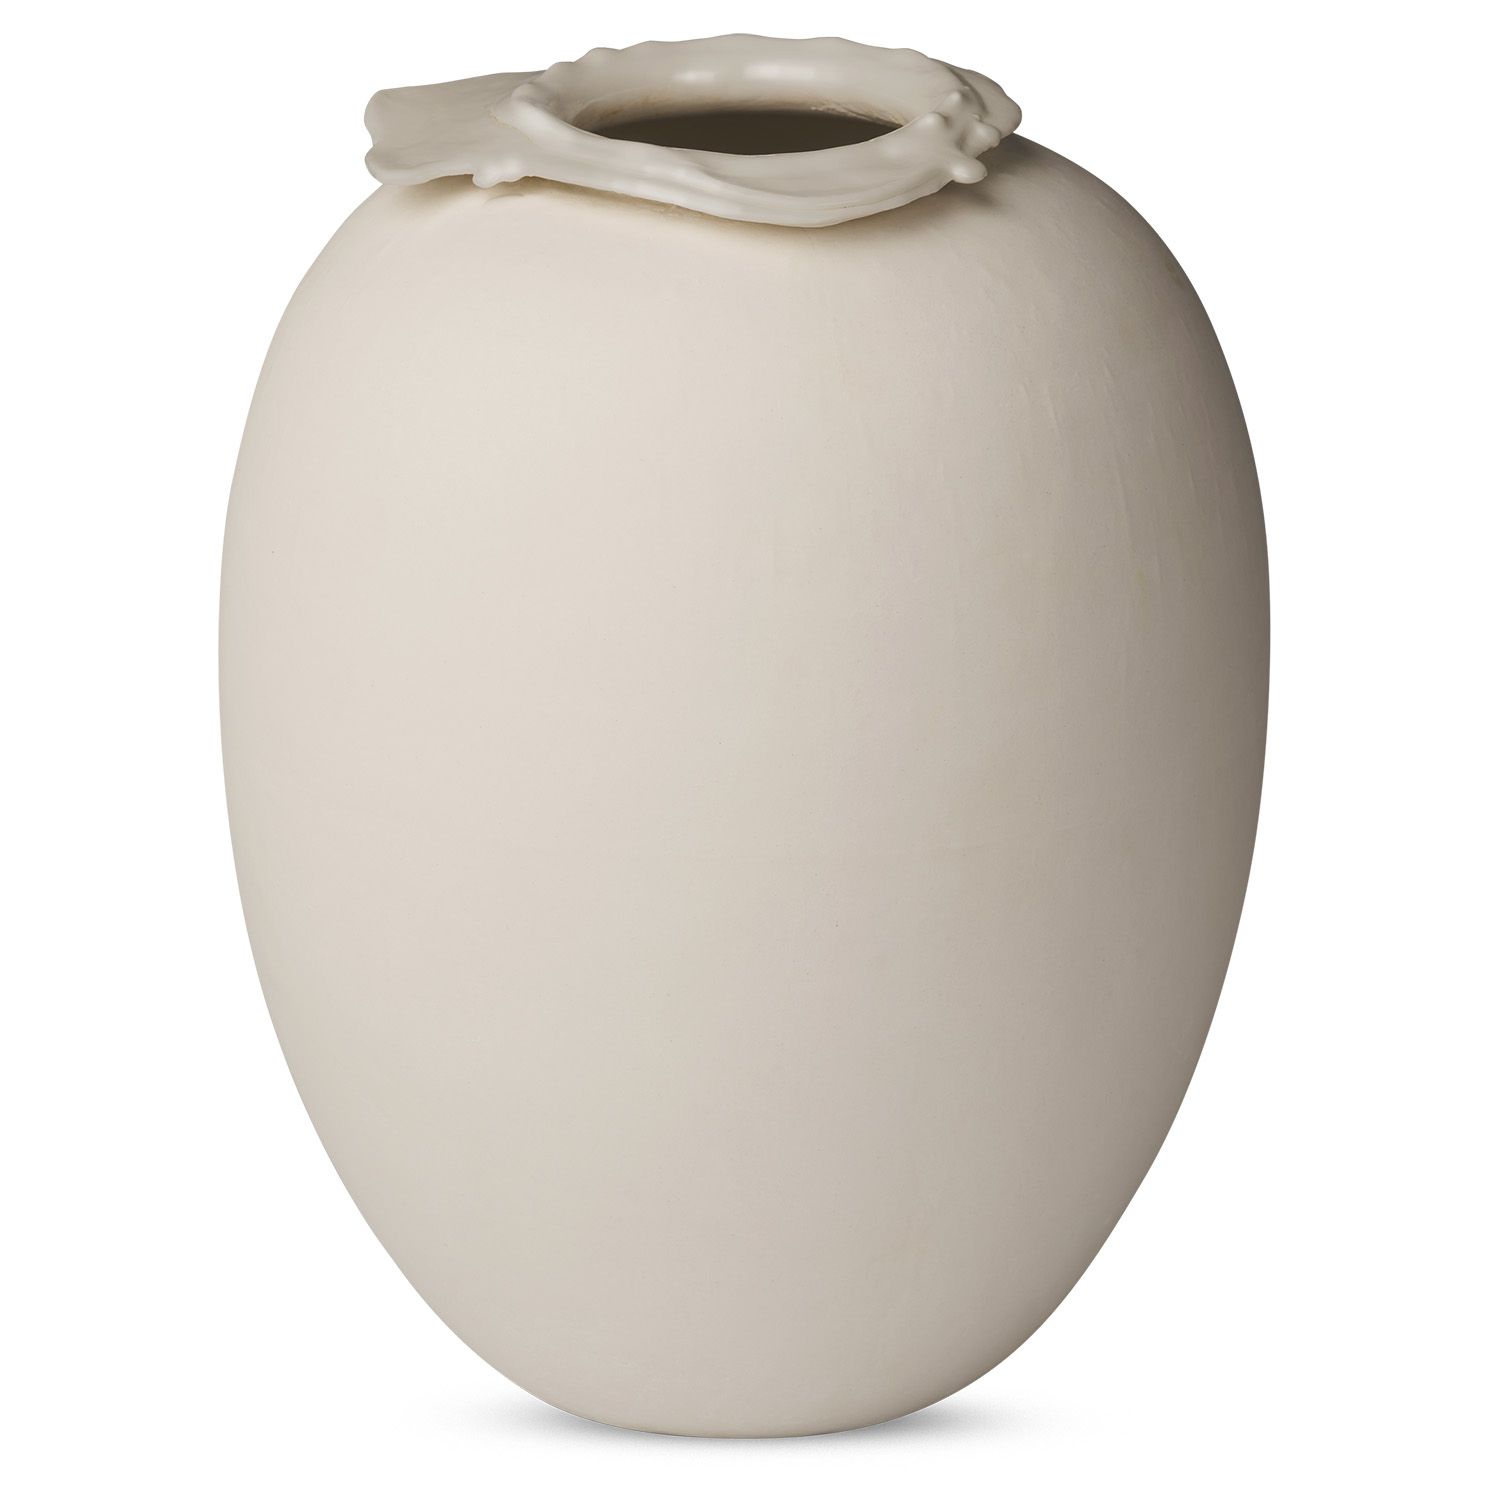 Northern designové vázy Brim Vase Large (výška 28 cm) - DESIGNPROPAGANDA